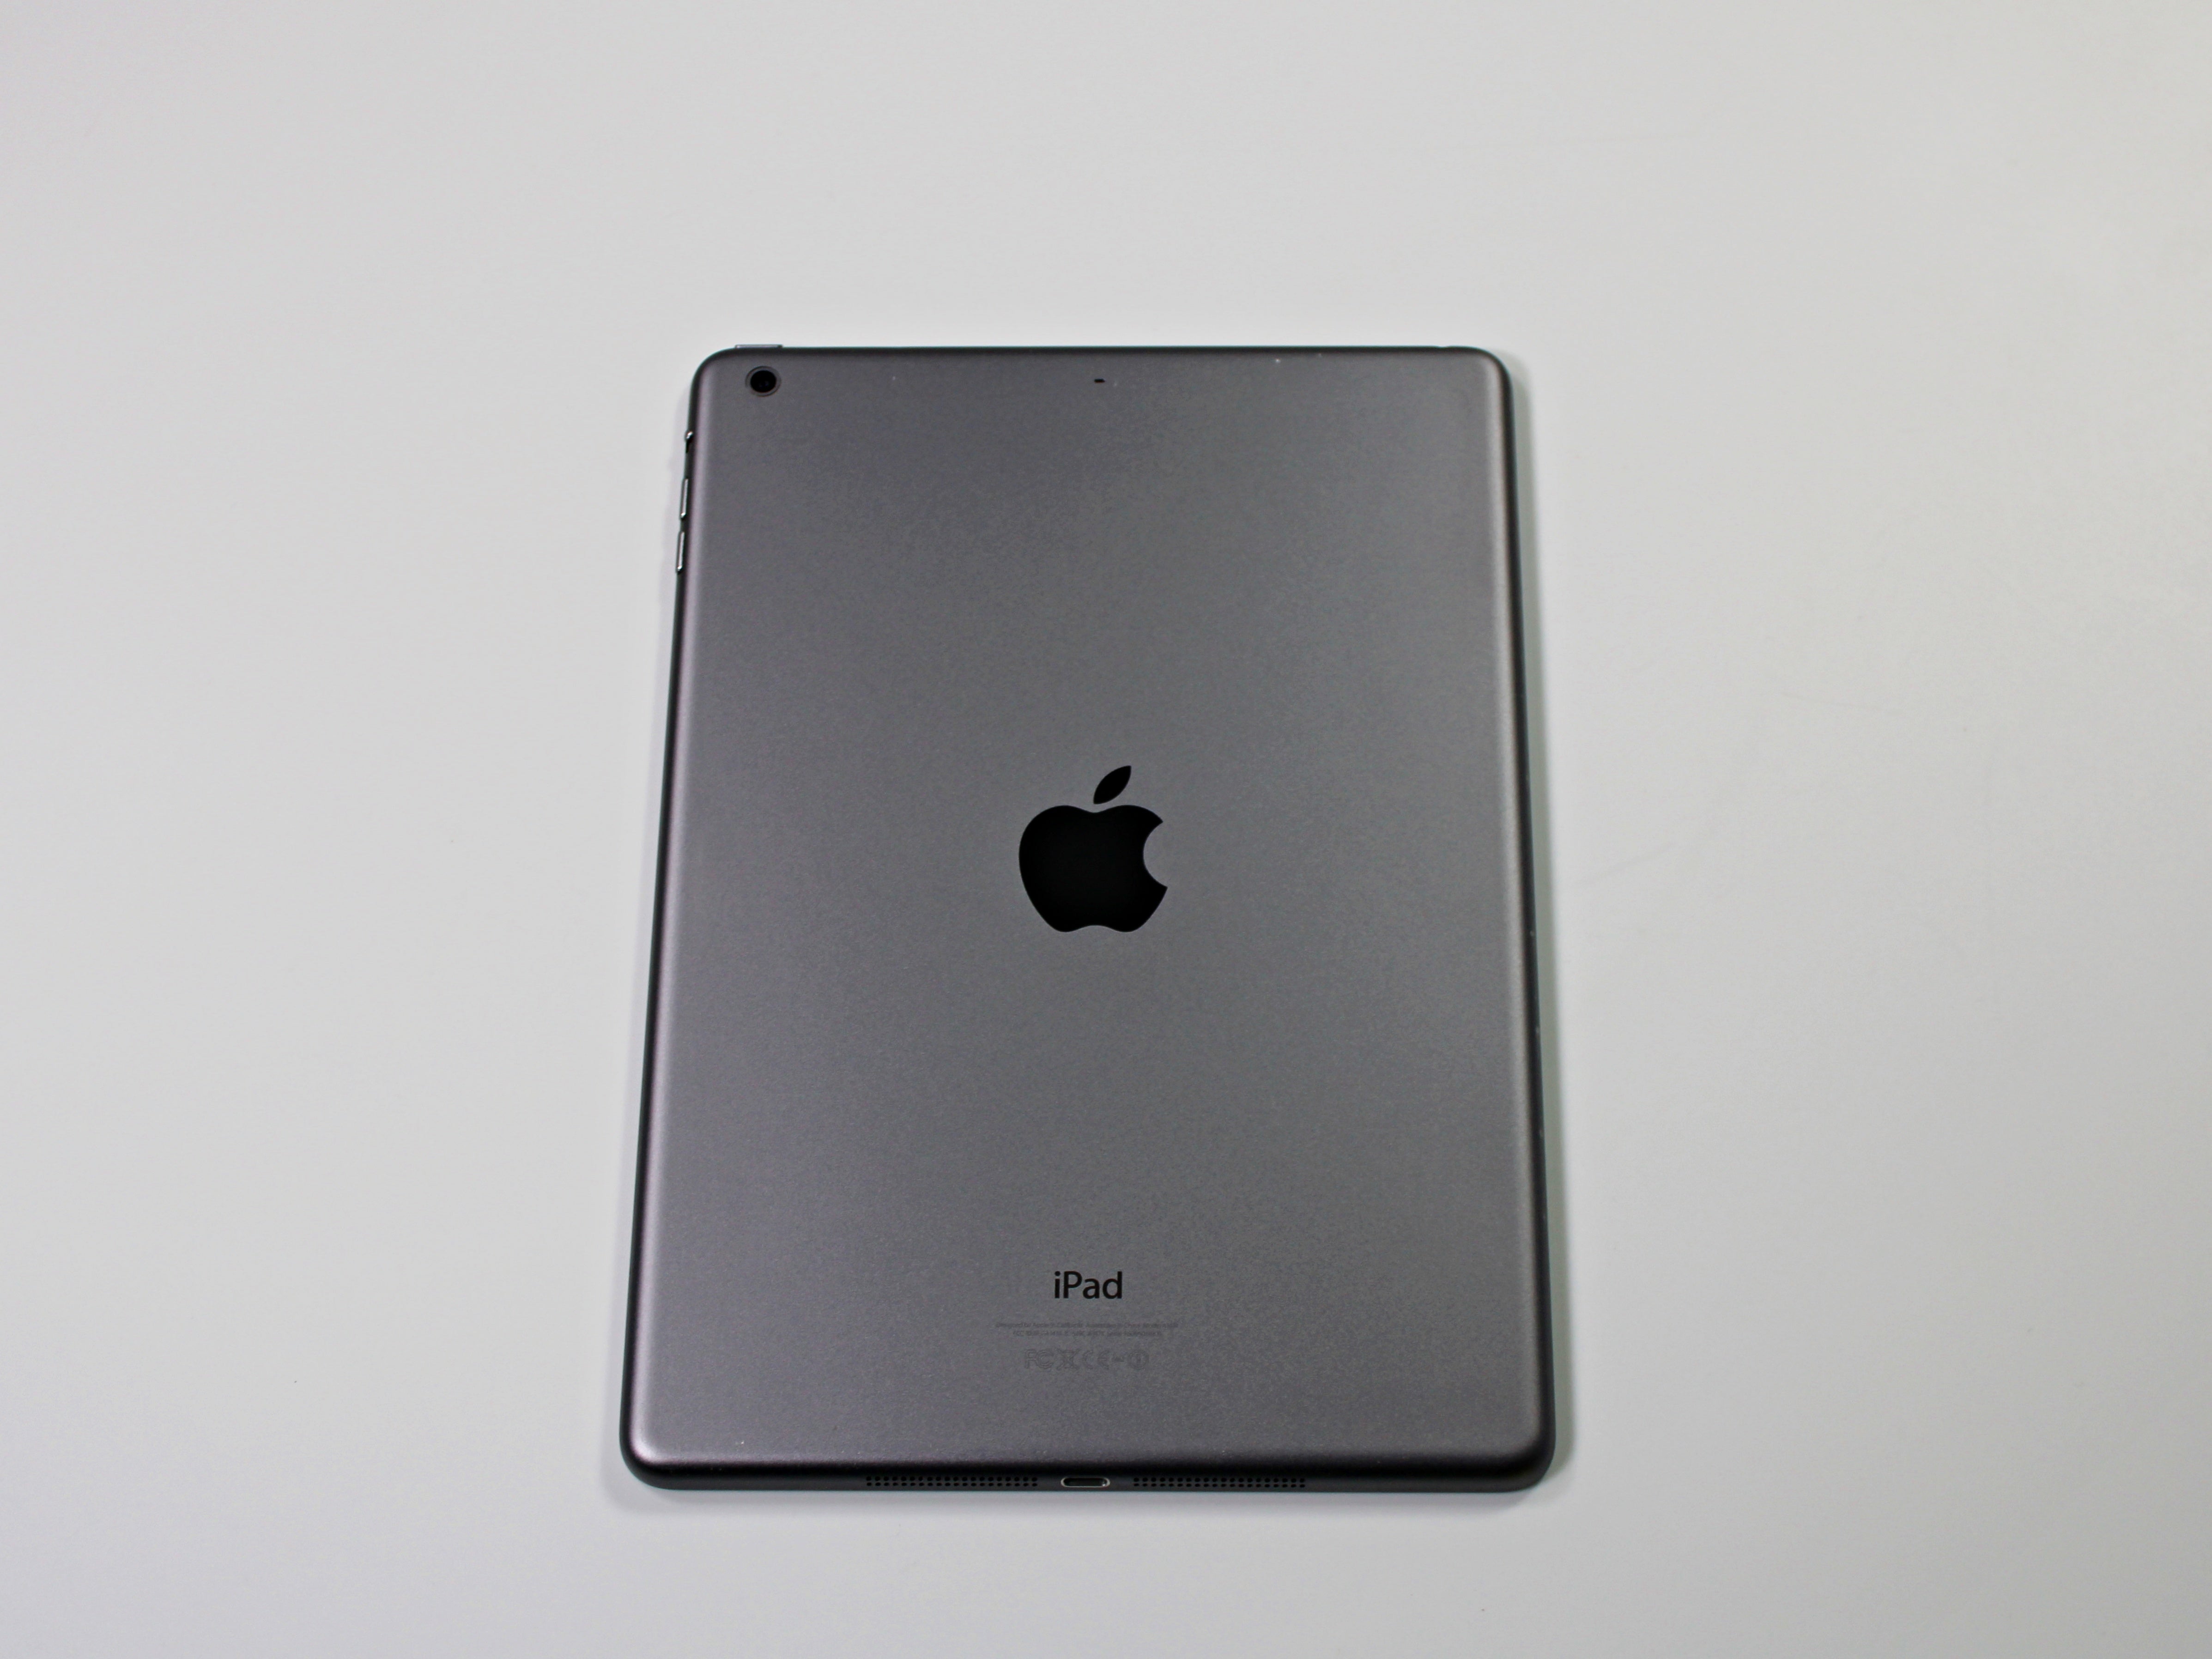 Buy Used & Refurbished Apple iPad Air 2 with Wi-Fi 16GB - Black